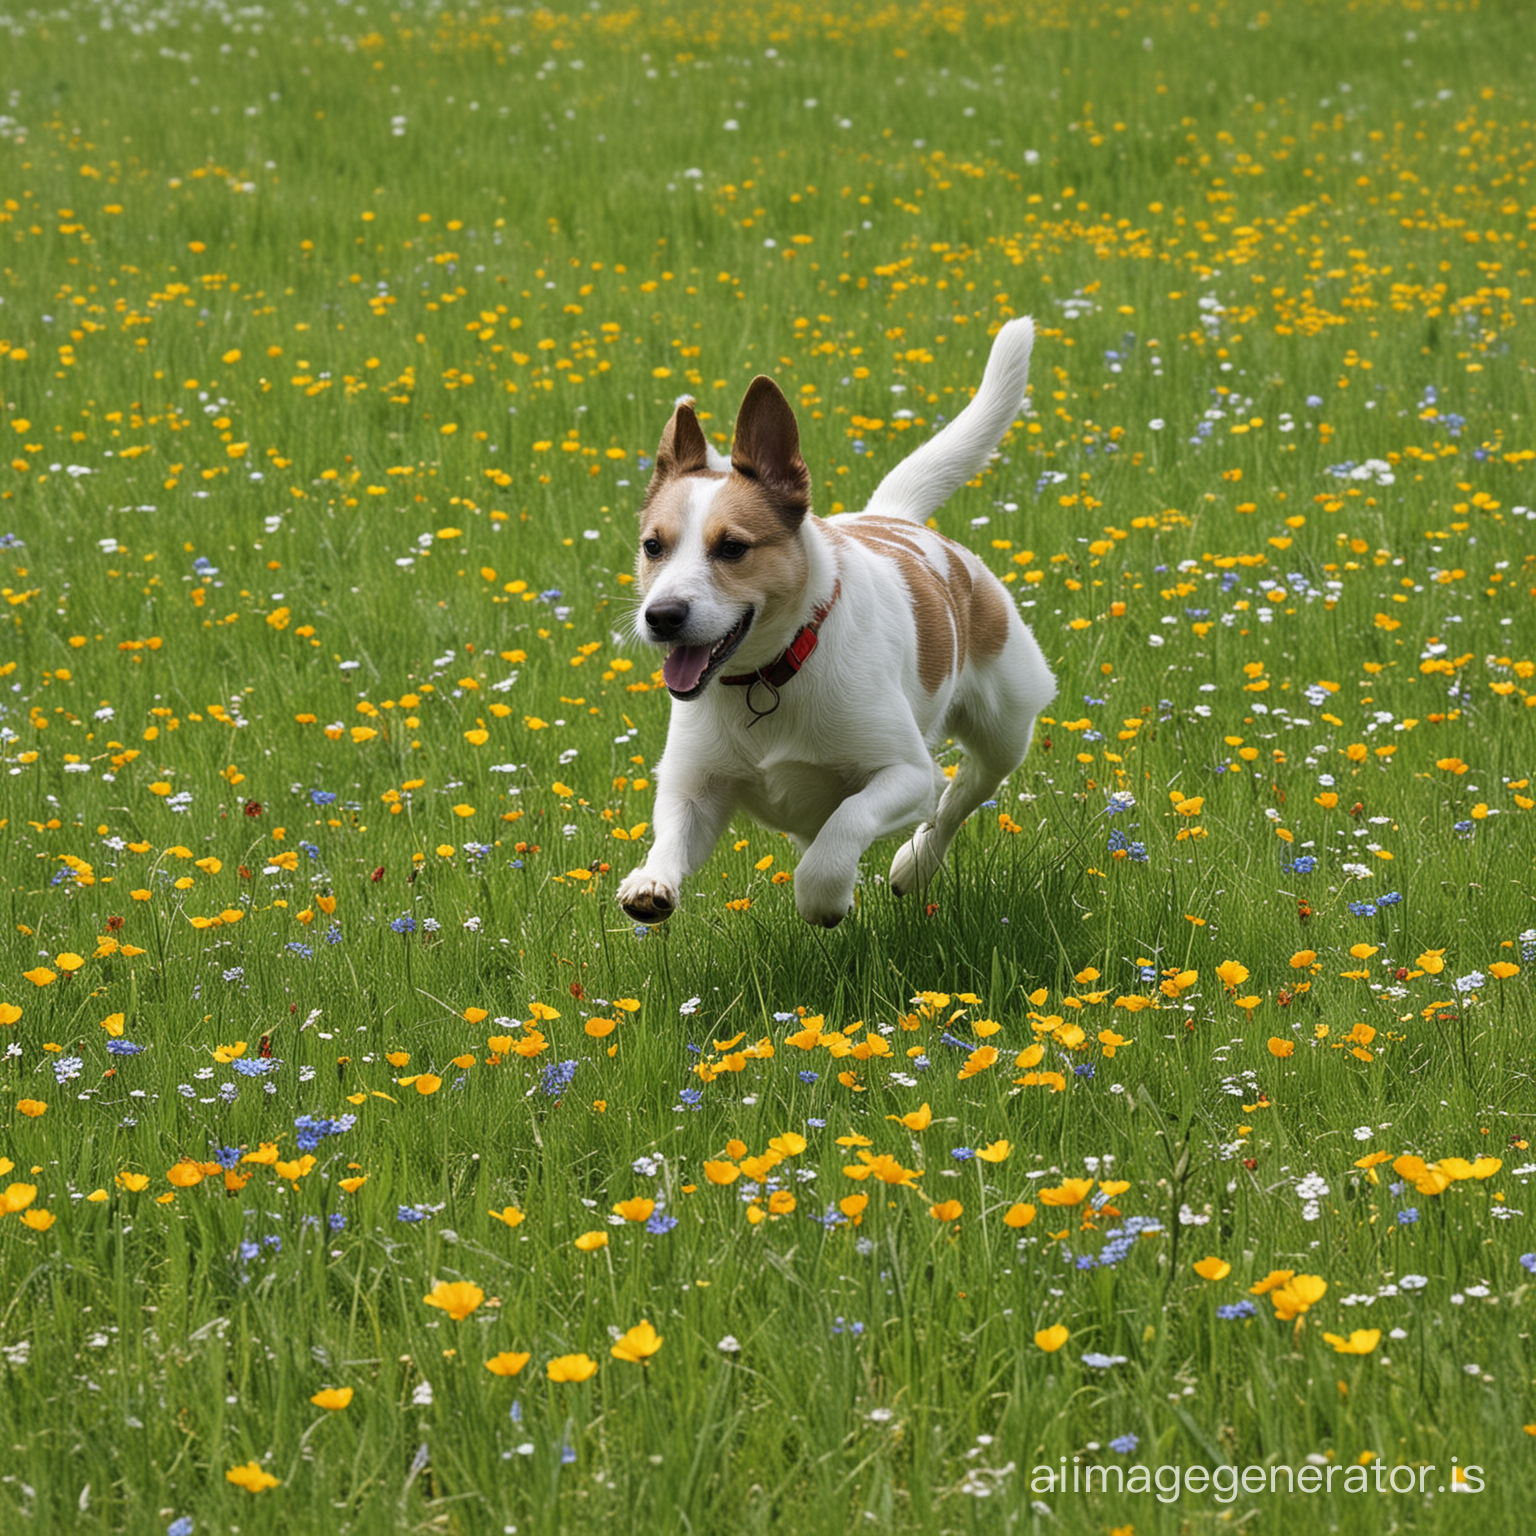 Running Squarell on the plain grass, between summer flower.